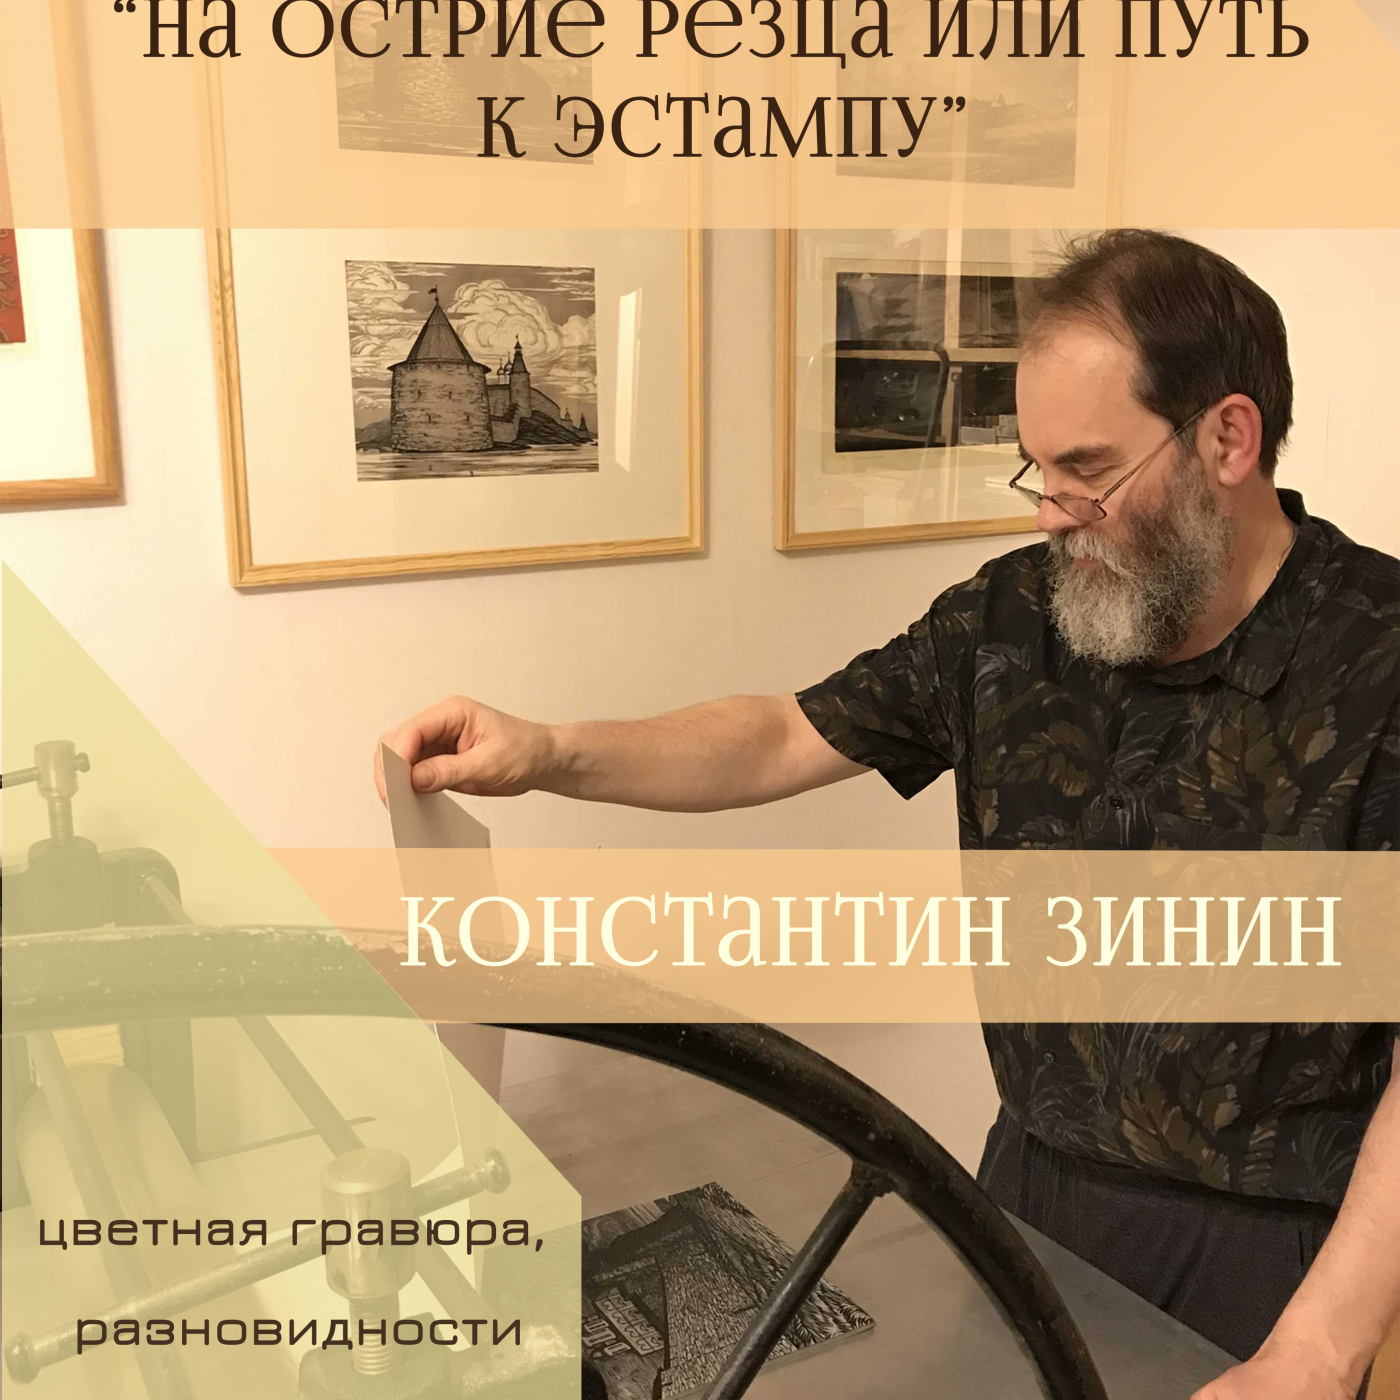 Персональная выставка Константина Зинина откроется 10 марта